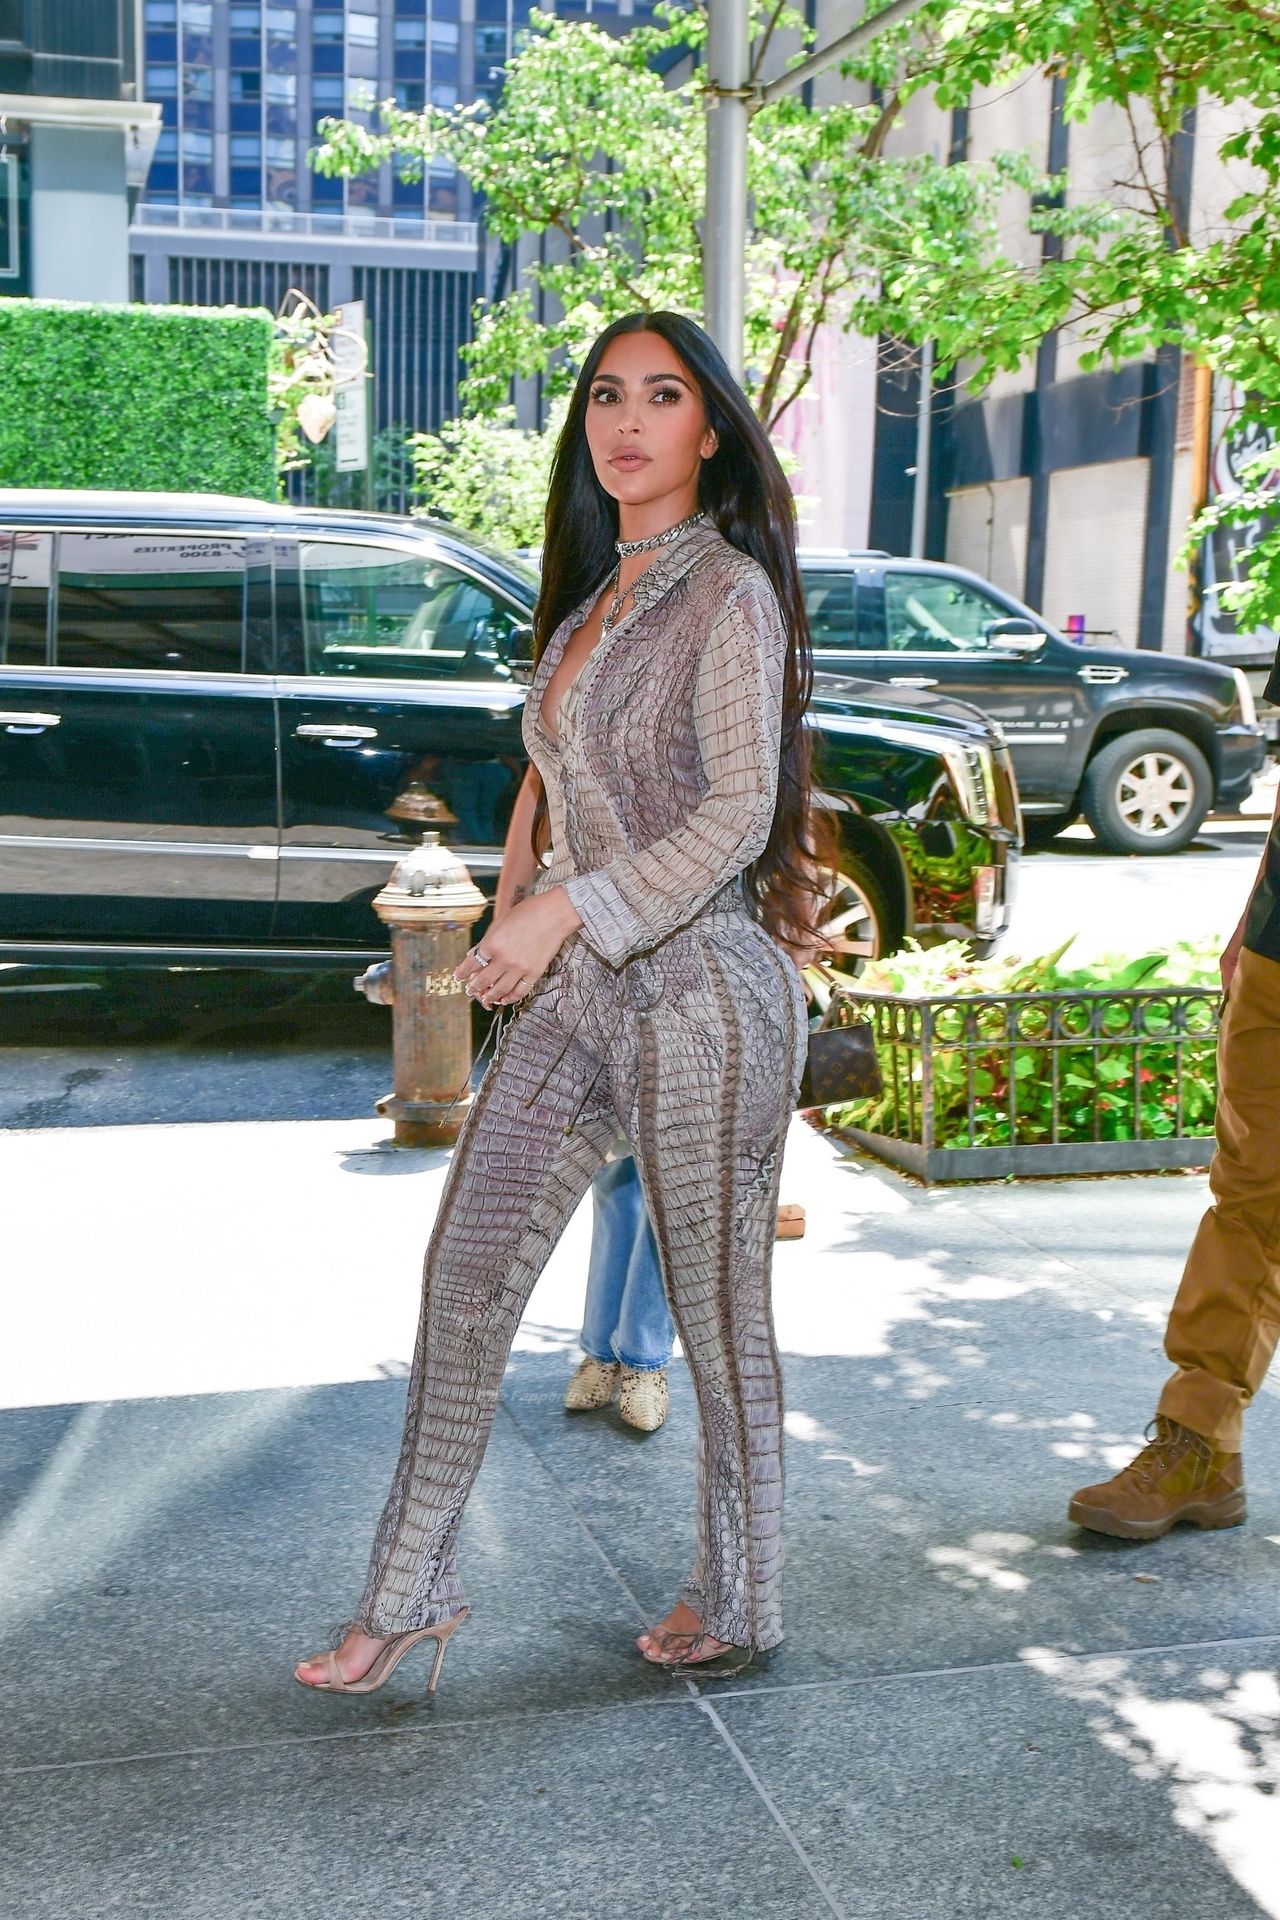 Kim-Kardashian-Sexy-The-Fappening-Blog-15.jpg